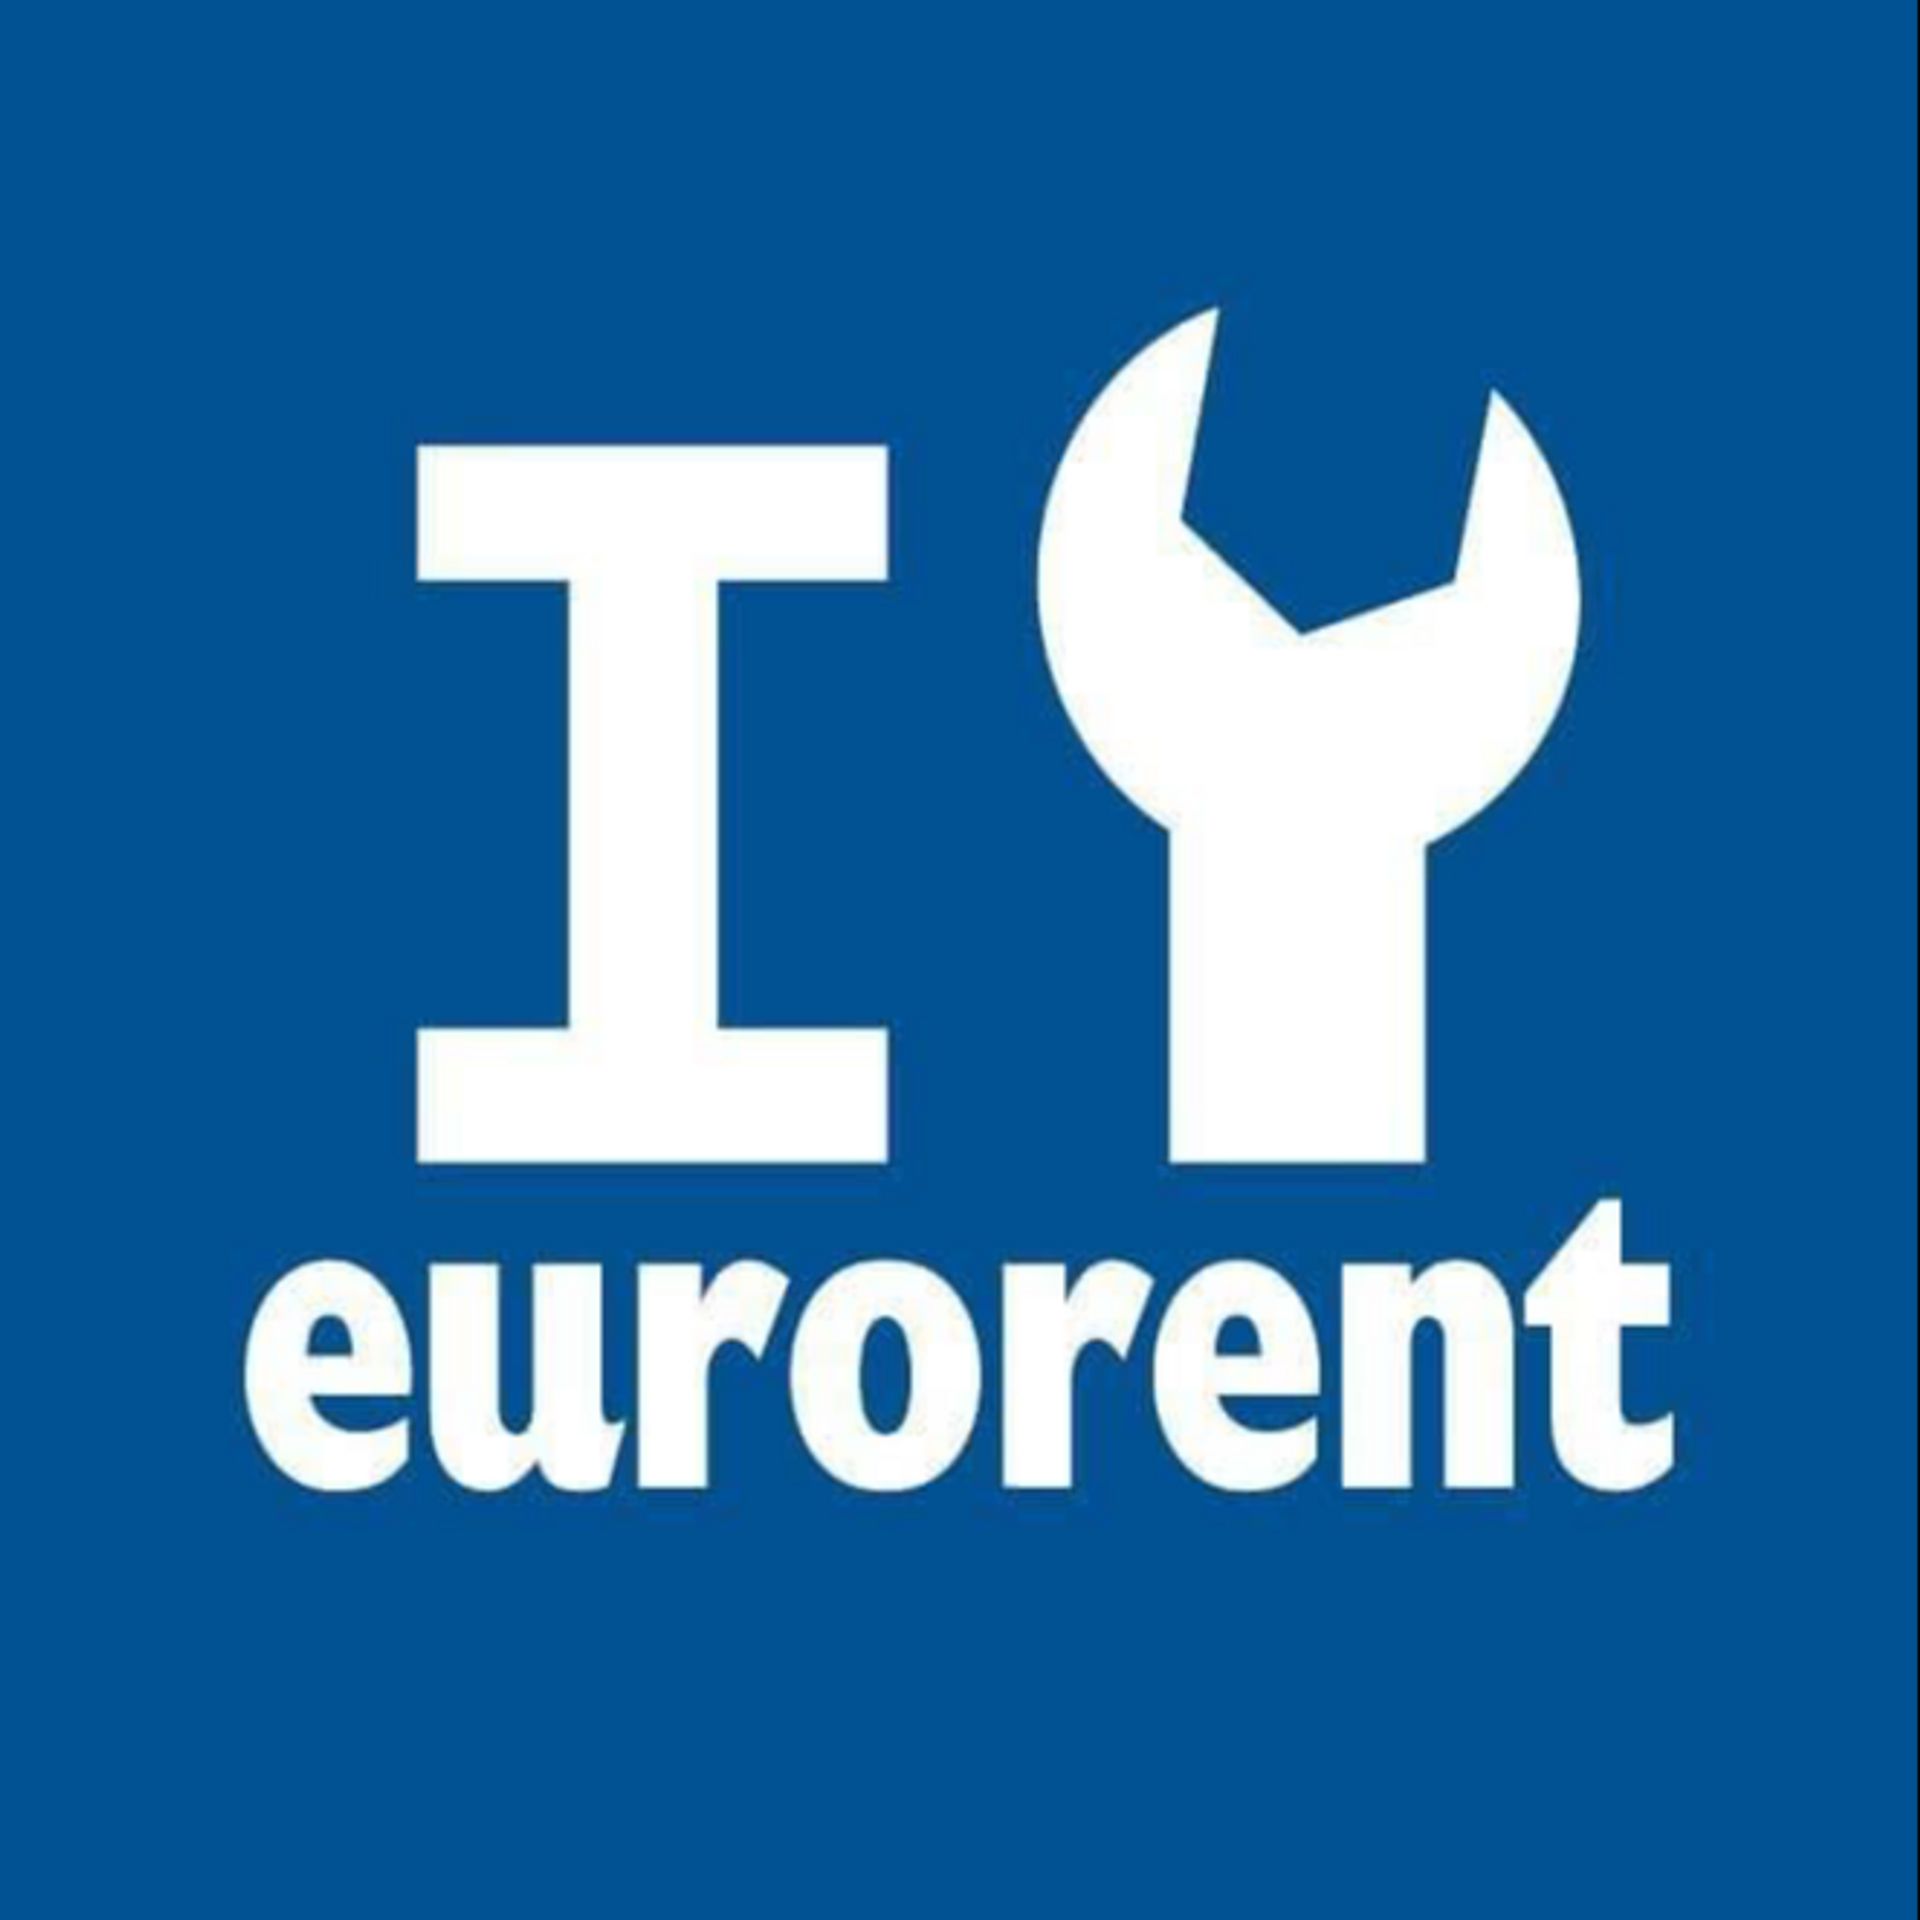 eurorent